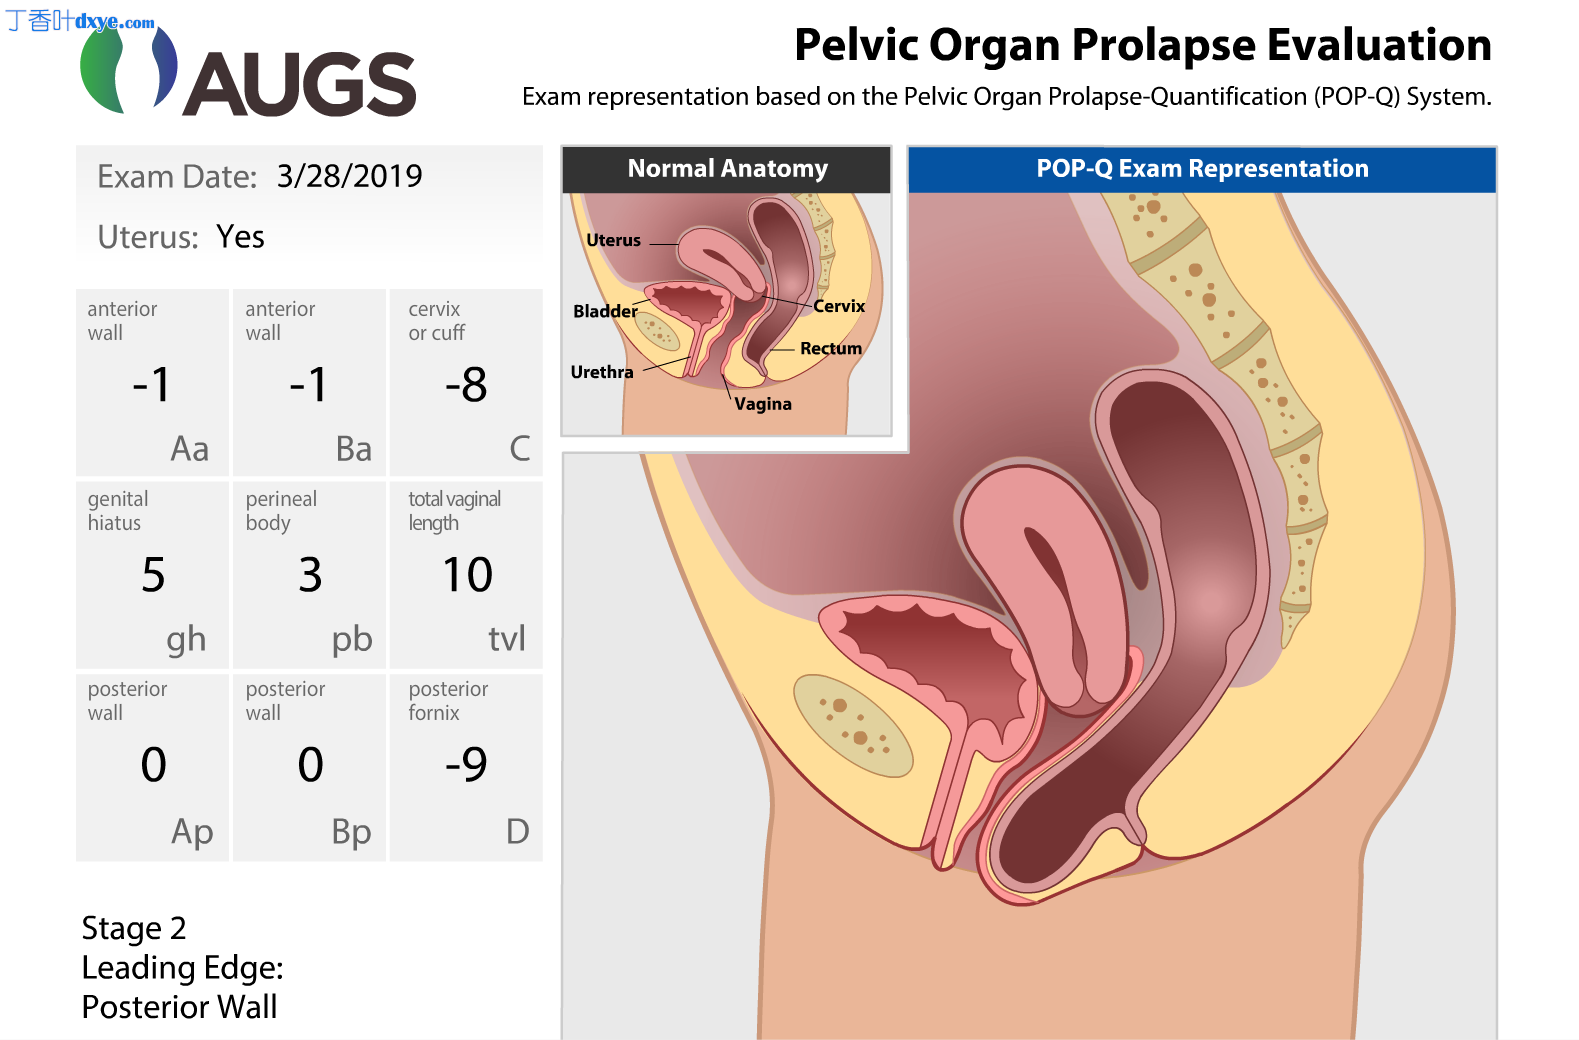 针对直肠前突的特定部位后部阴道成形术和会阴成形术